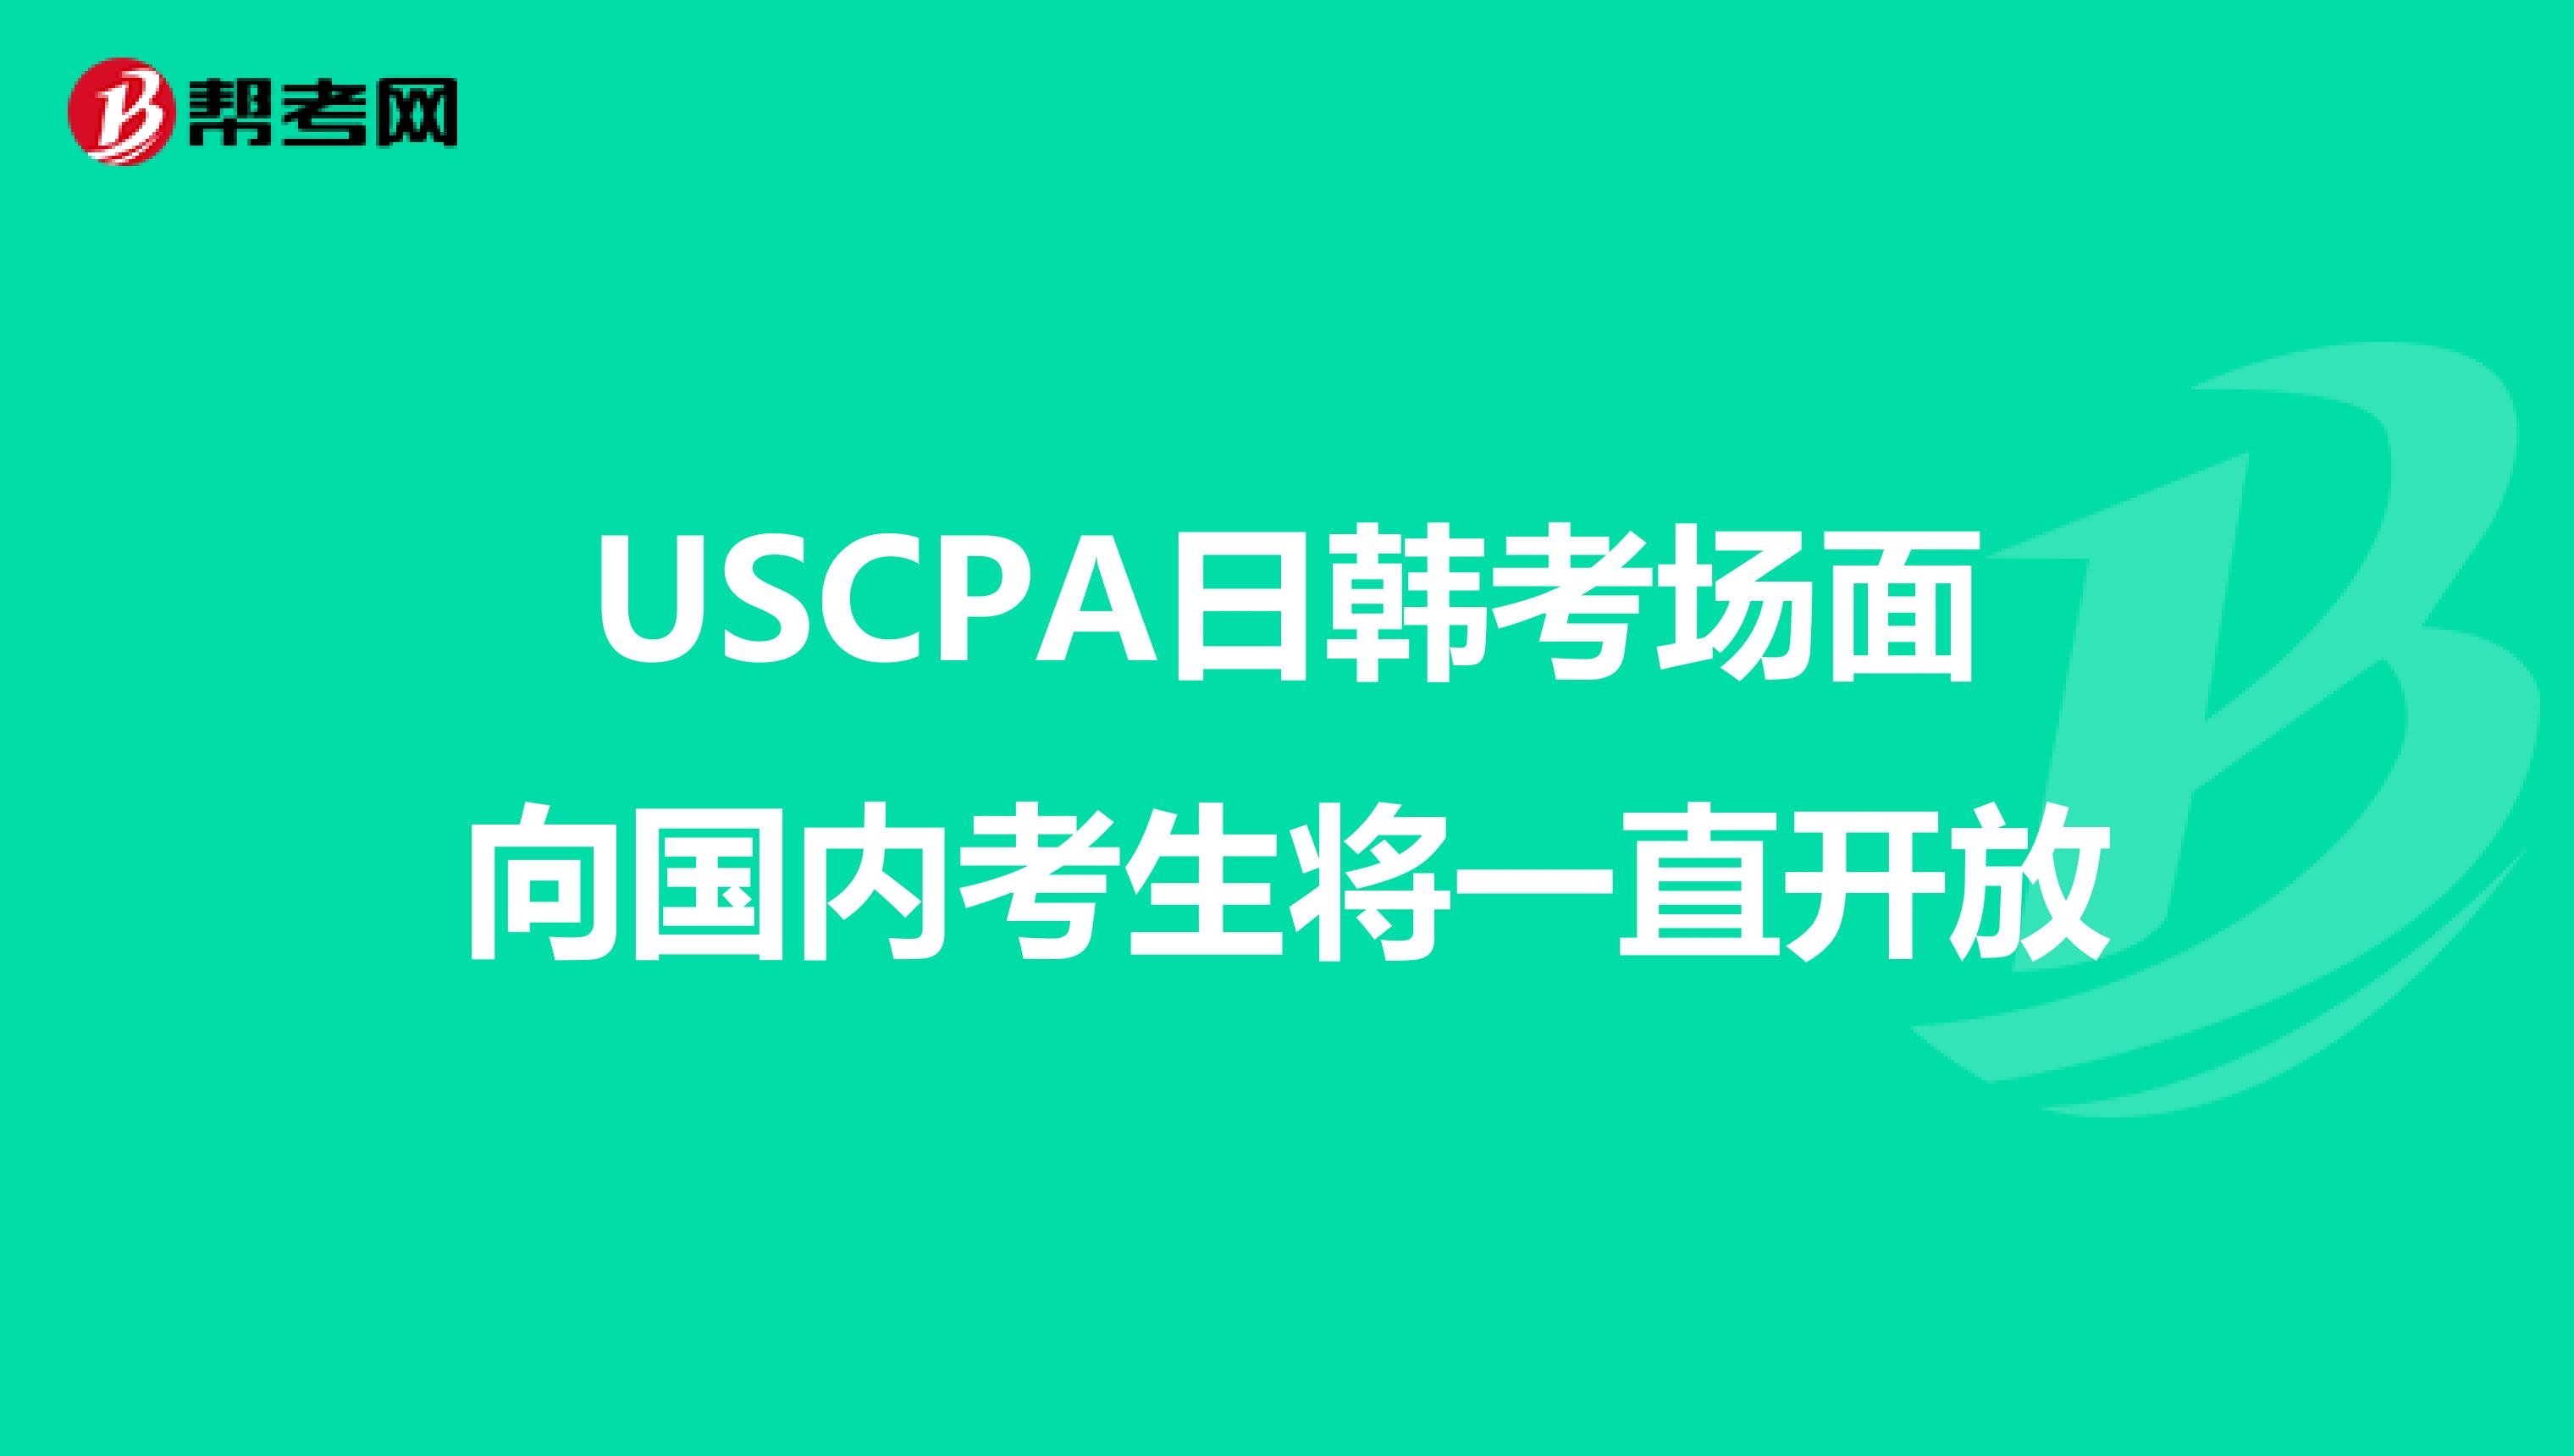 USCPA日韩考场面向国内考生将一直开放